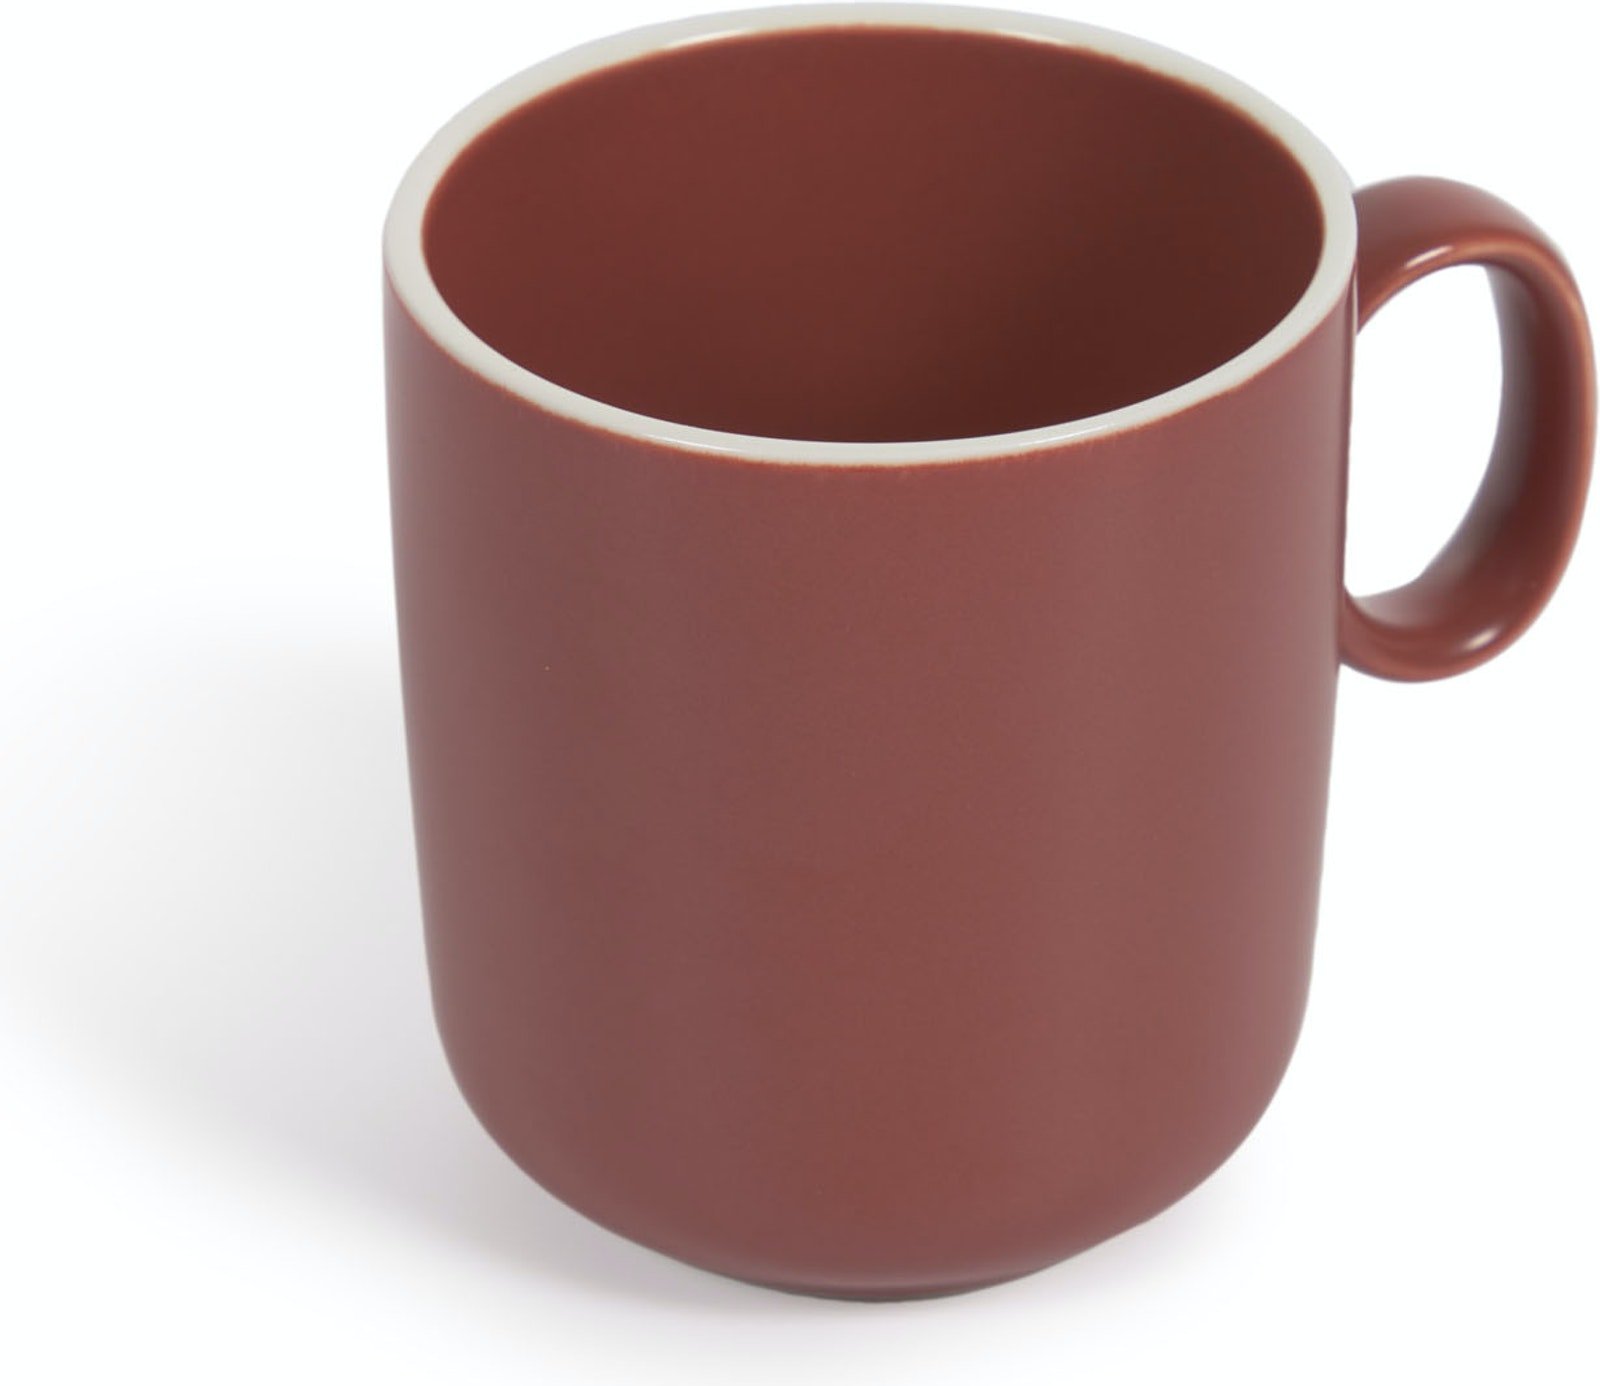 Billede af Roperta, Kaffekrus, keramisk by LaForma (H: 9.7 cm. B: 87 cm. L: 87 cm., Rød)